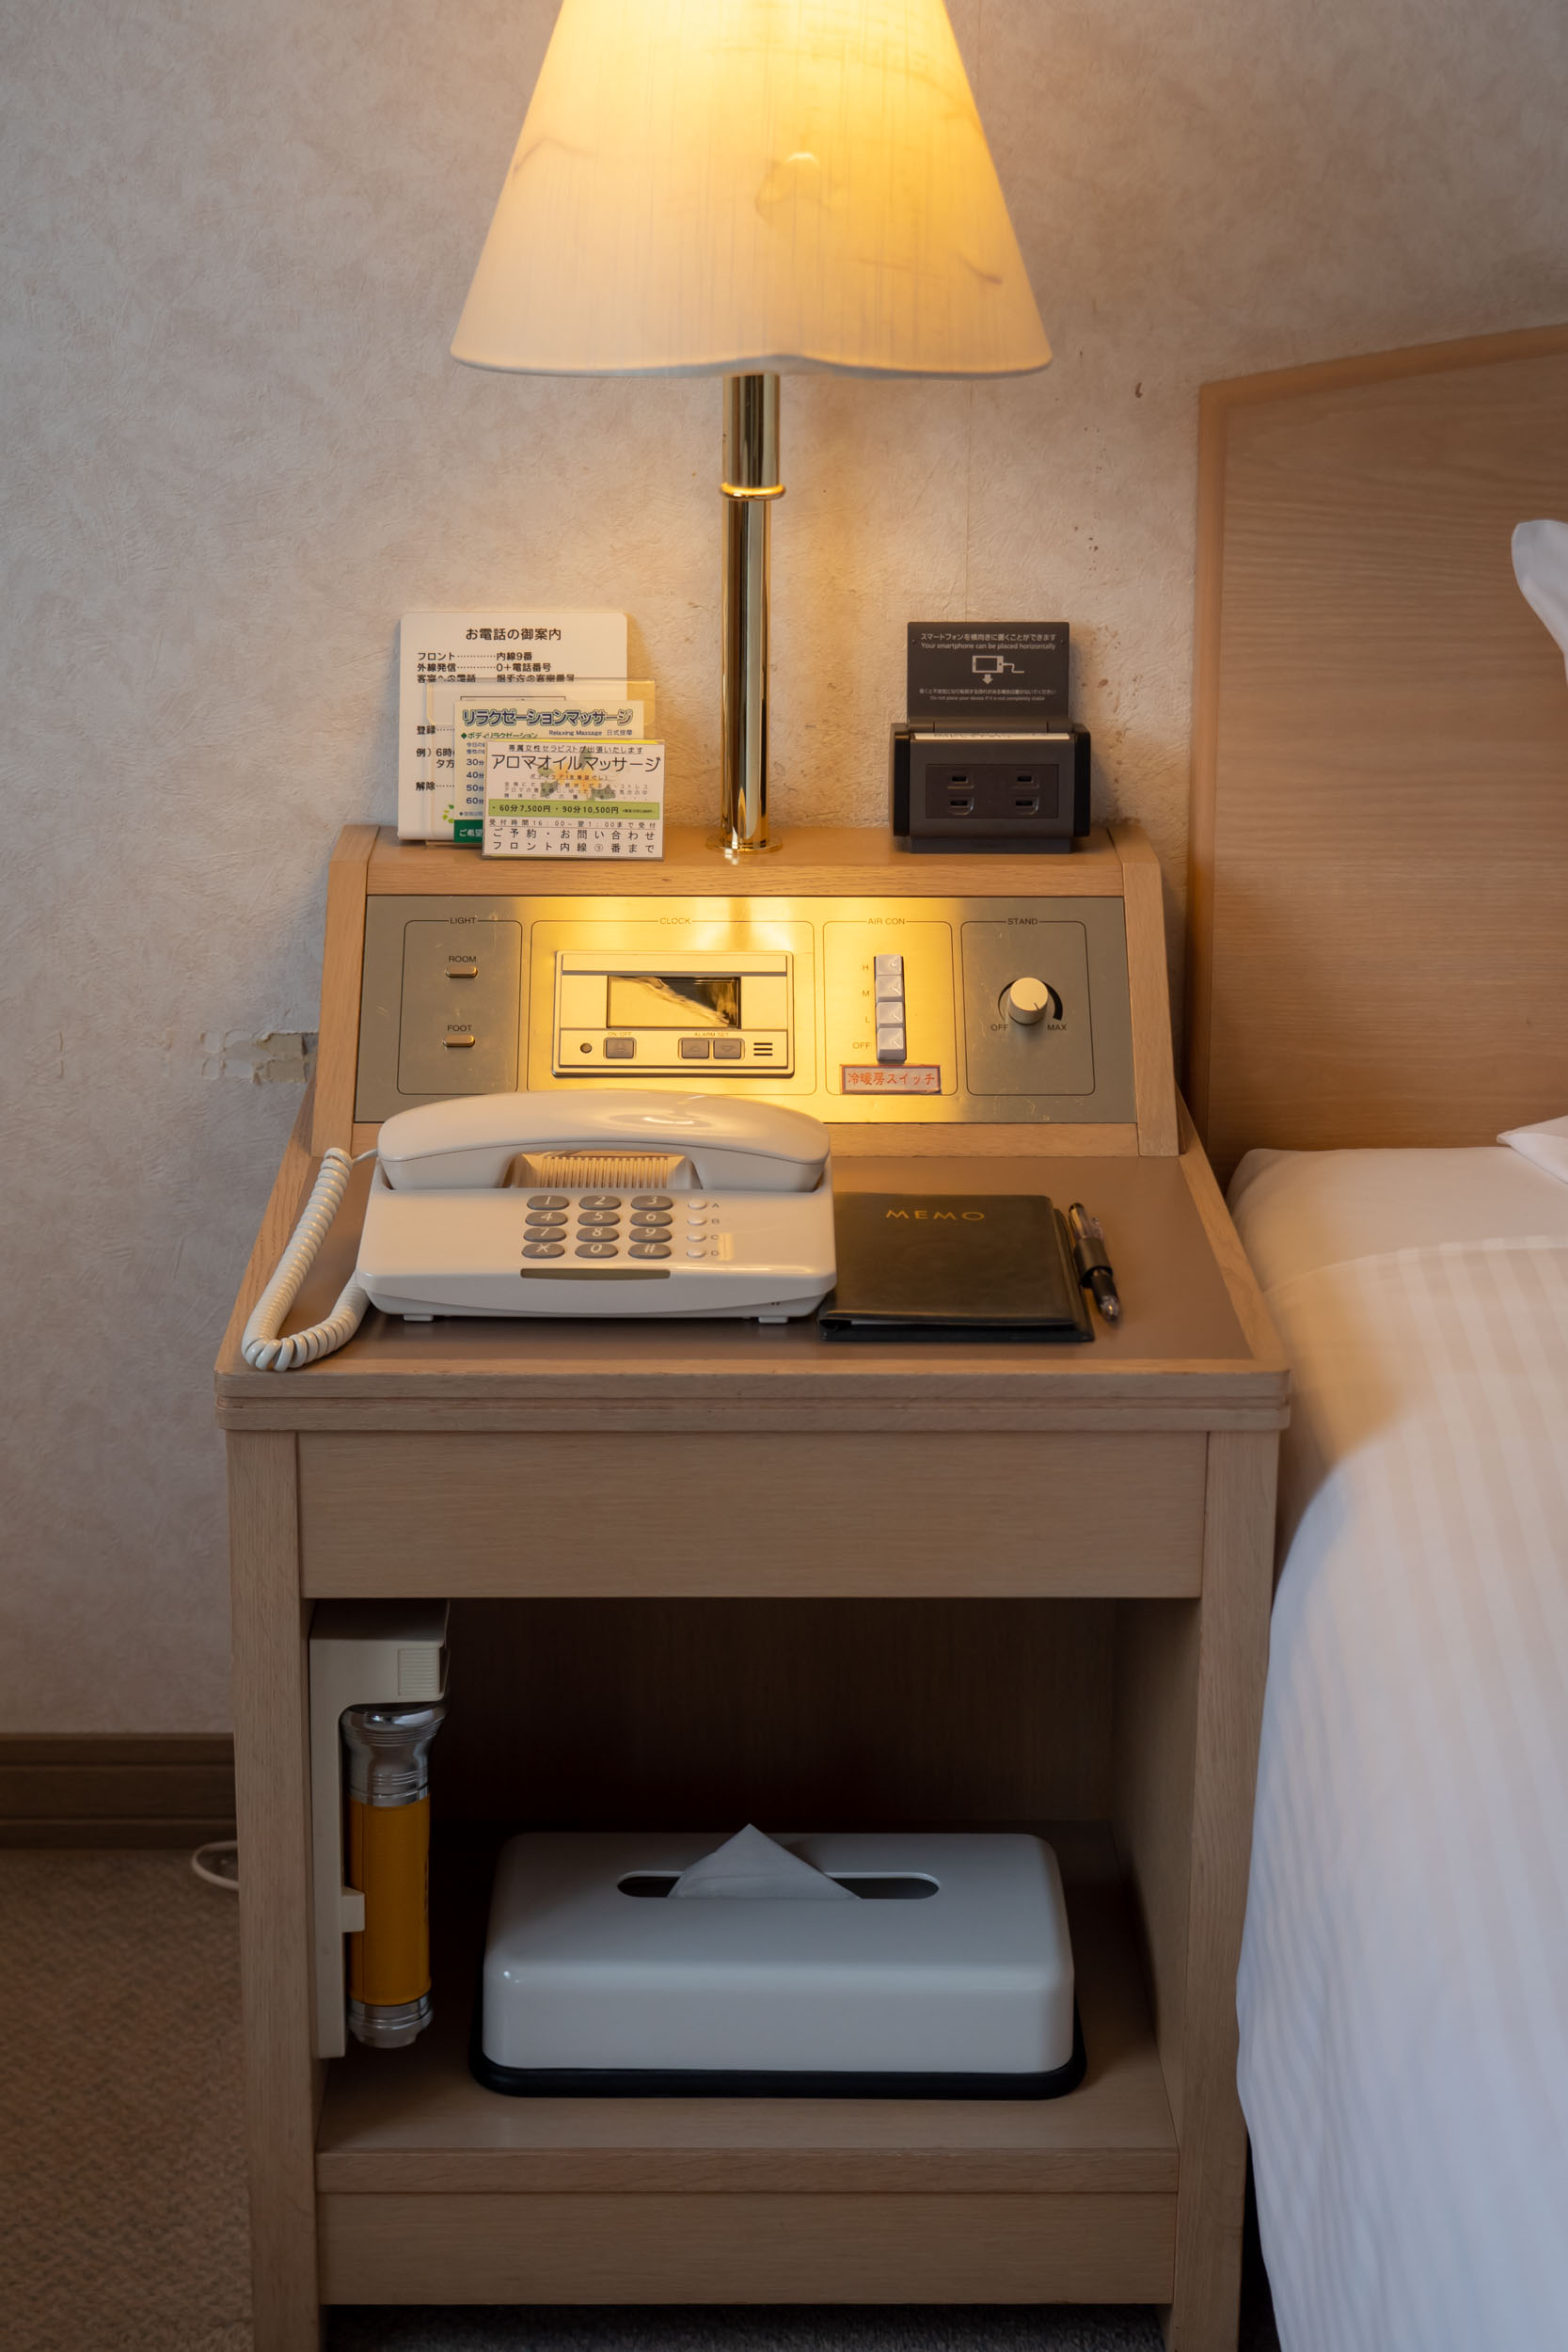 札幌第一ホテルのベッドサイドデスク　DMC-GX8 + LEICA DG 12-60mm